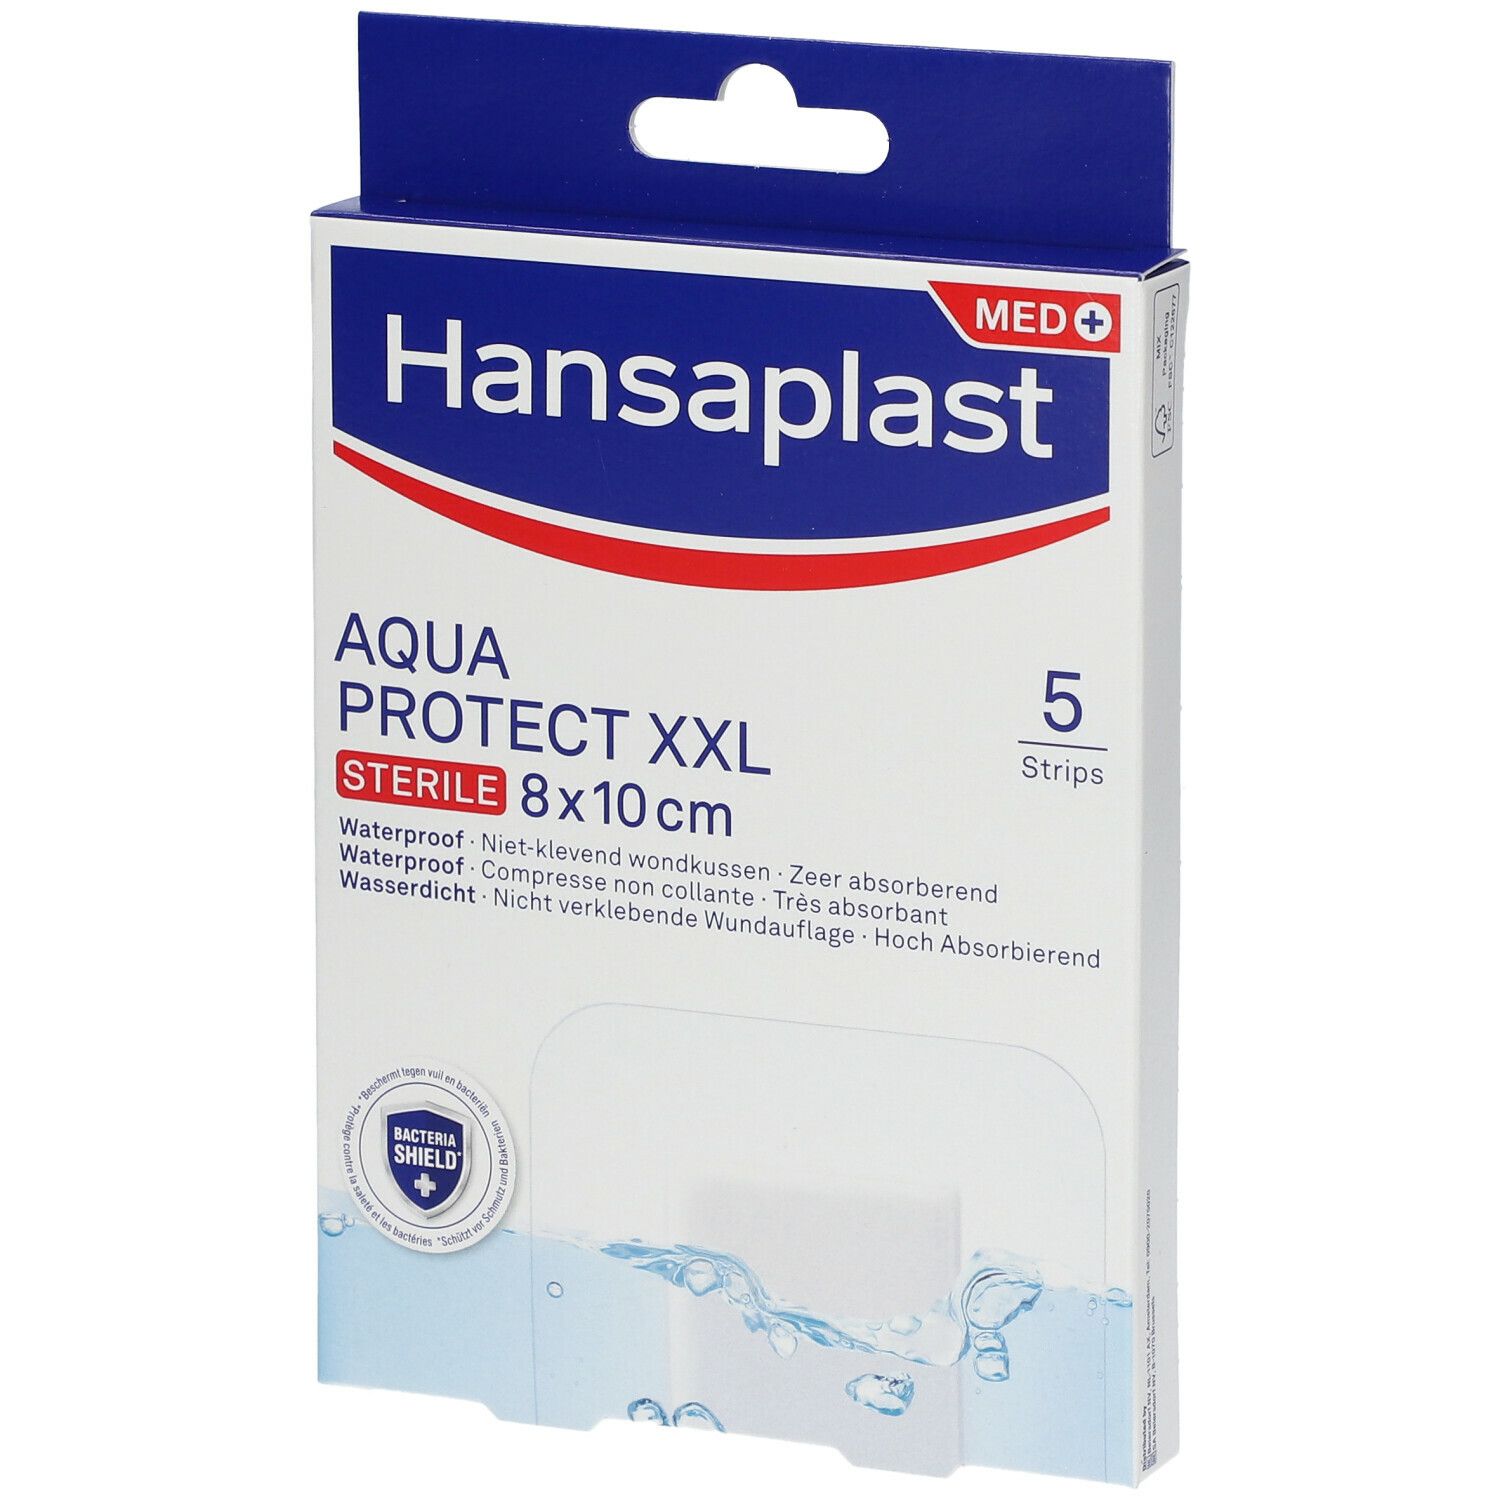 Hansaplast Aquaprotect XXL Stérile 8 x 10 cm